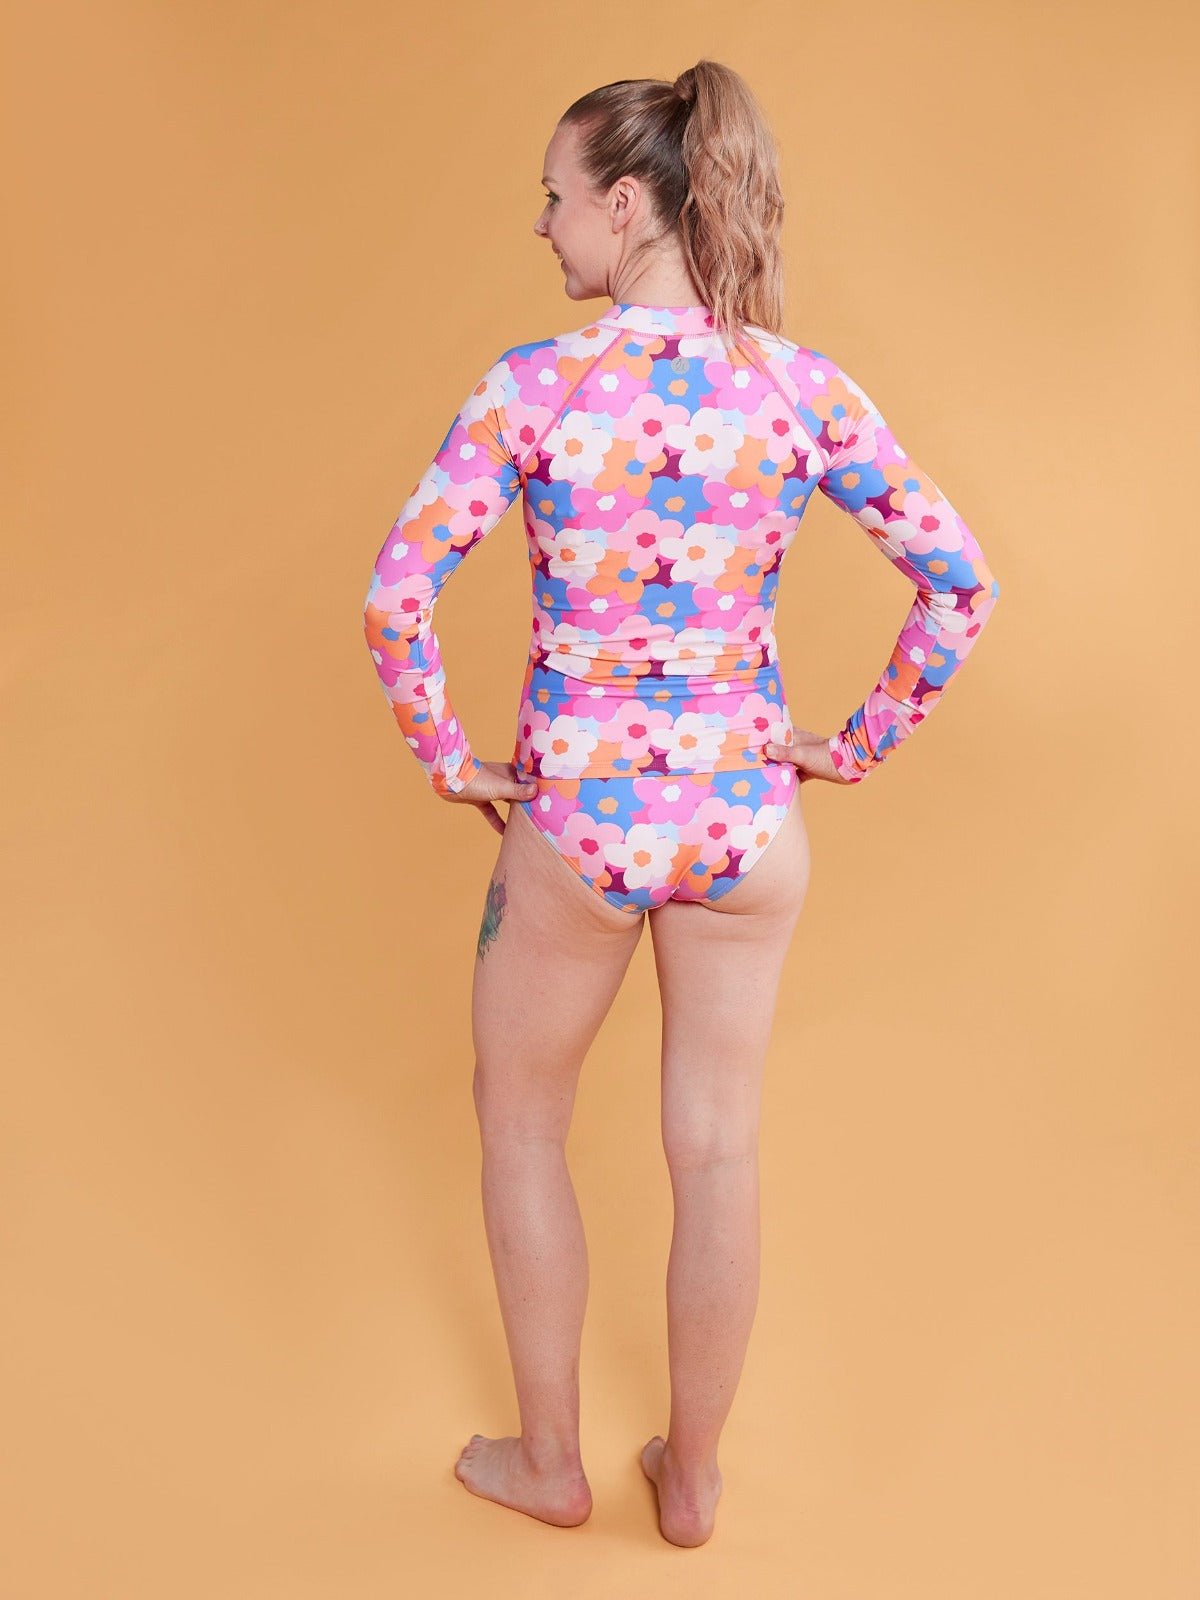 Hello Bloomer Long-Sleeved Full Length Rashie Top - sun safe swimsuit for women